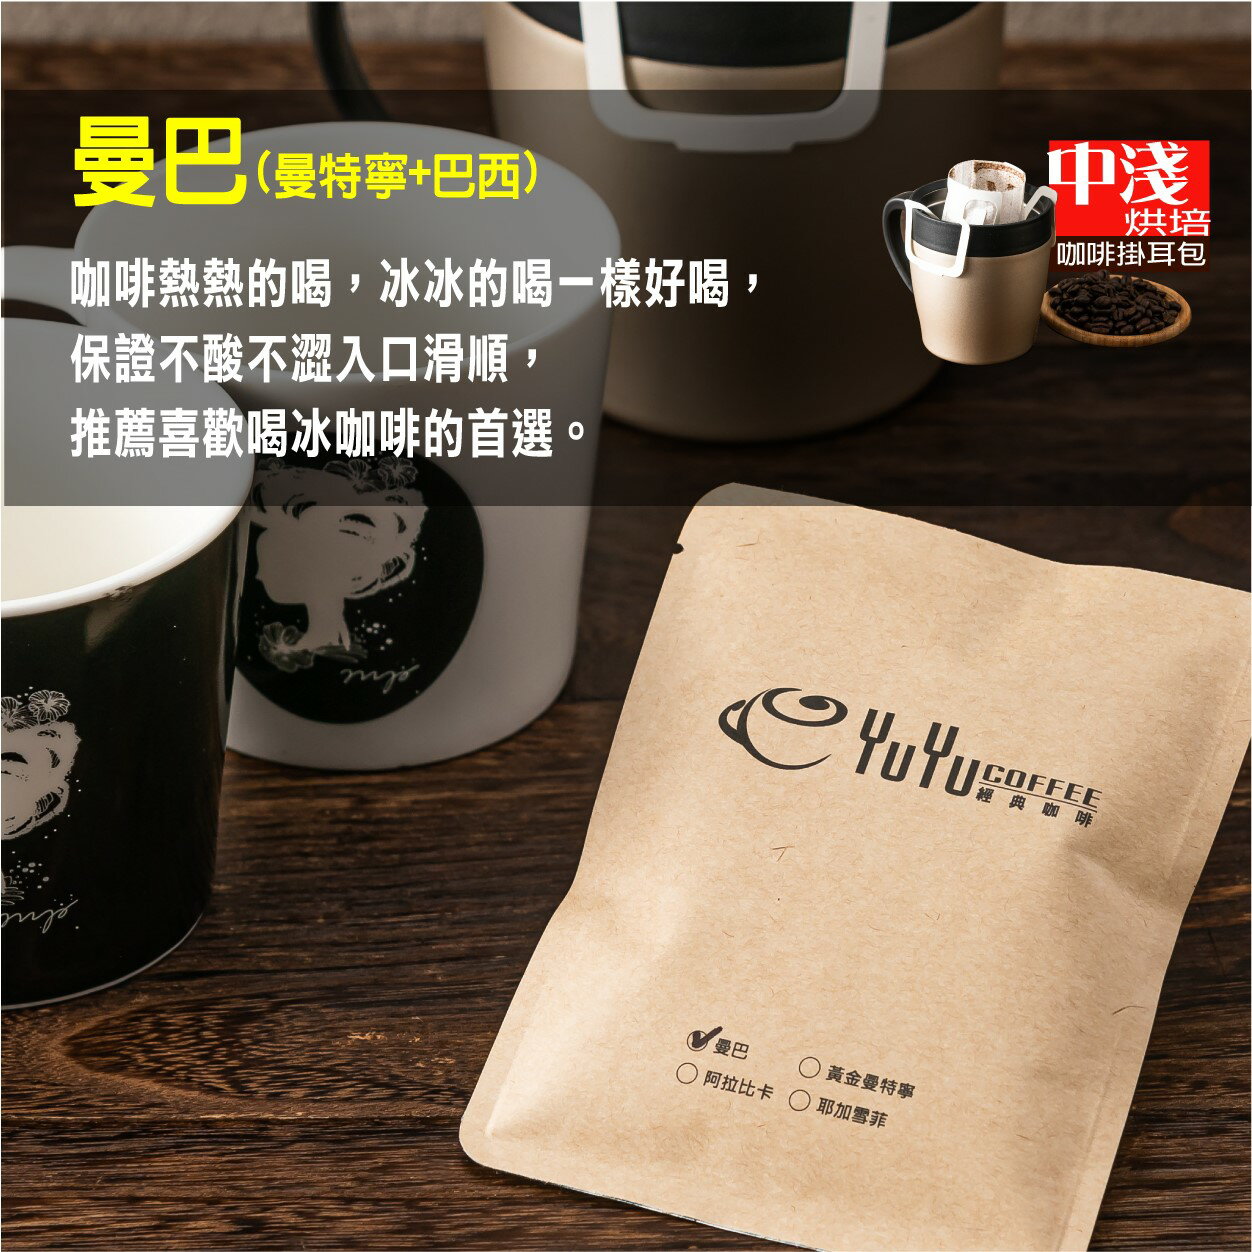 YuYu經典咖啡 曼巴/曼特寧+巴西(中淺烘培) 濾泡式咖啡掛耳包 18g/一包